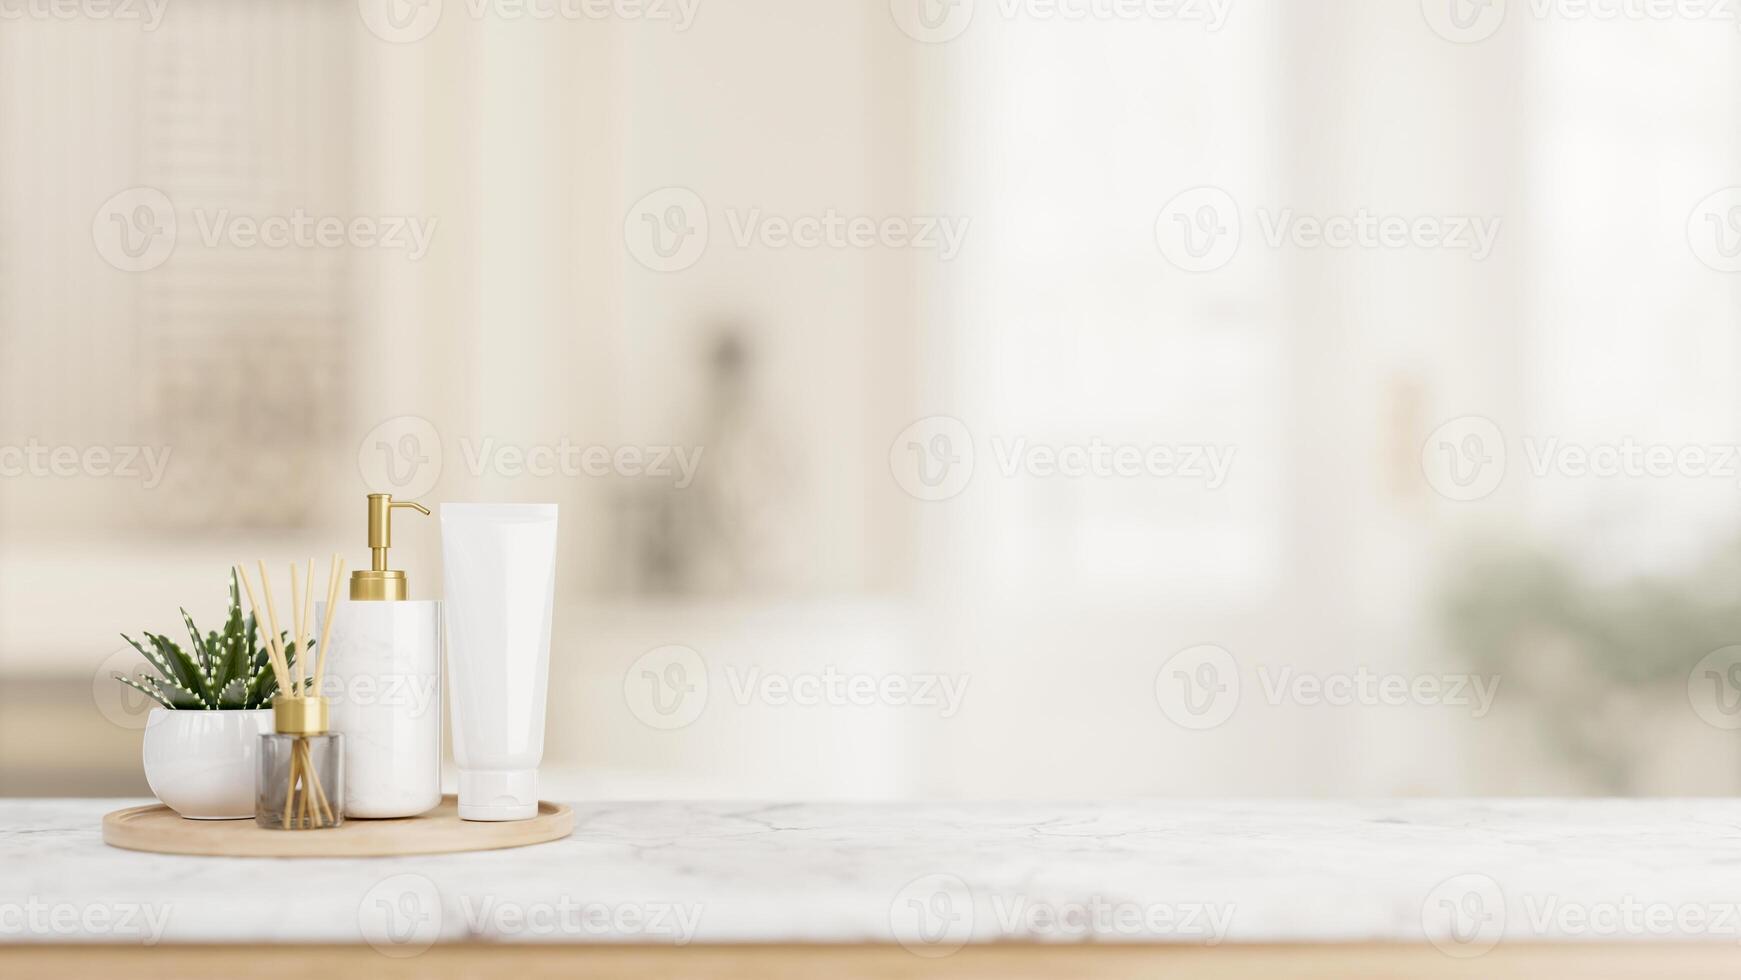 uma luxuoso artigos de higiene pessoal conjunto é colocada em uma luxo branco mármore de mesa dentro uma branco banheiro. foto